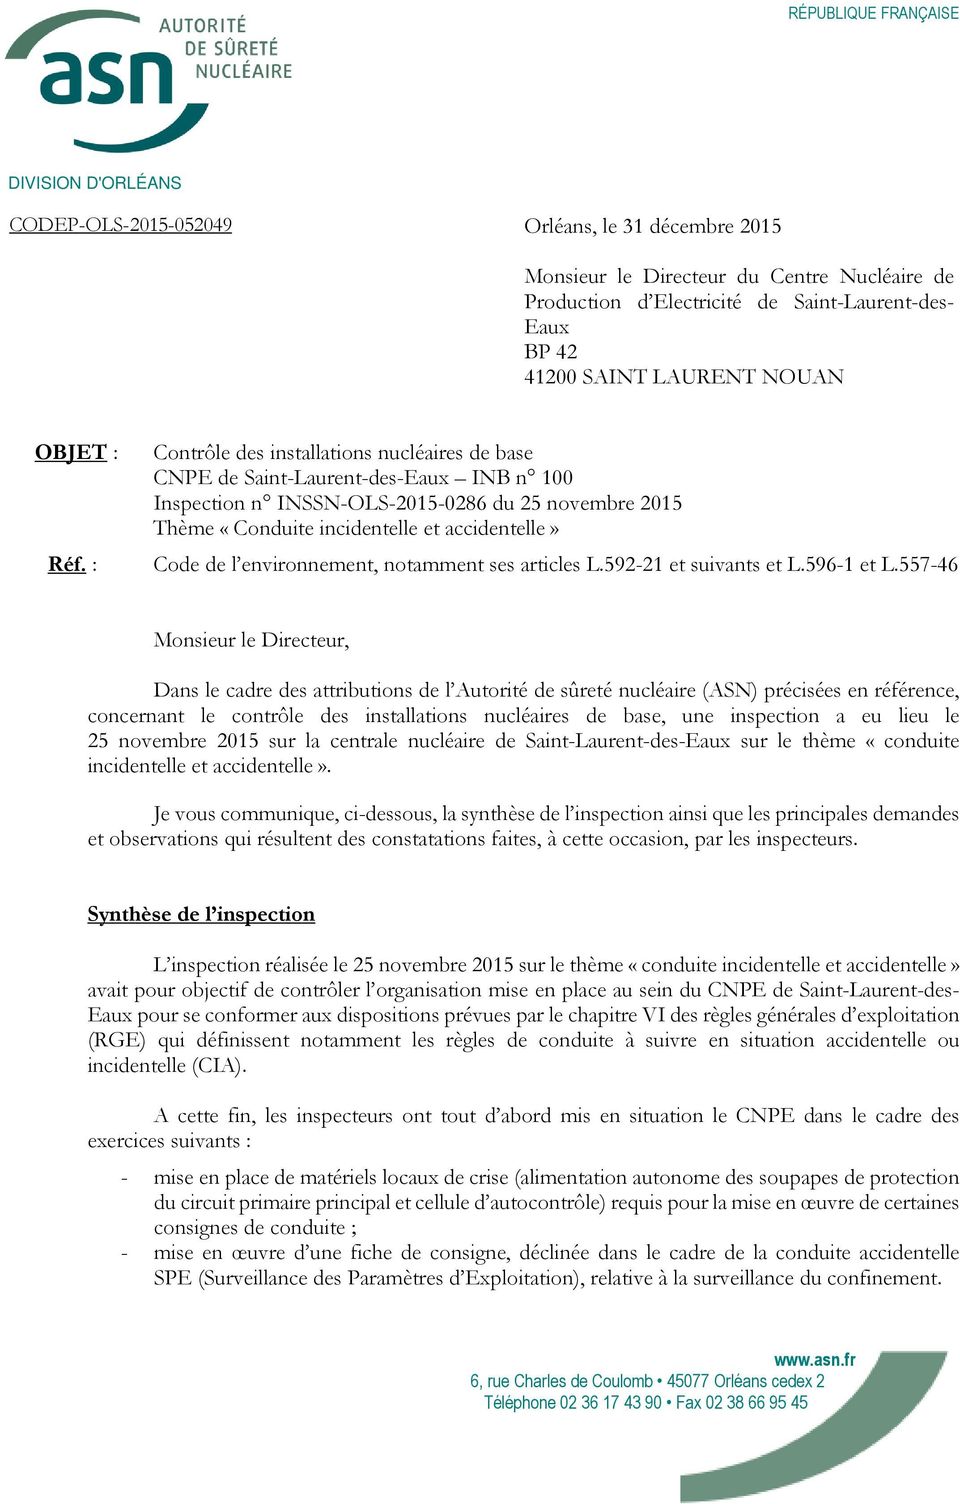 : Contrôle des installations nucléaires de base CNPE de Saint-Laurent-des-Eaux INB n 100 Inspection n INSSN-OLS-2015-0286 du 25 novembre 2015 Thème «Conduite incidentelle et accidentelle» Code de l